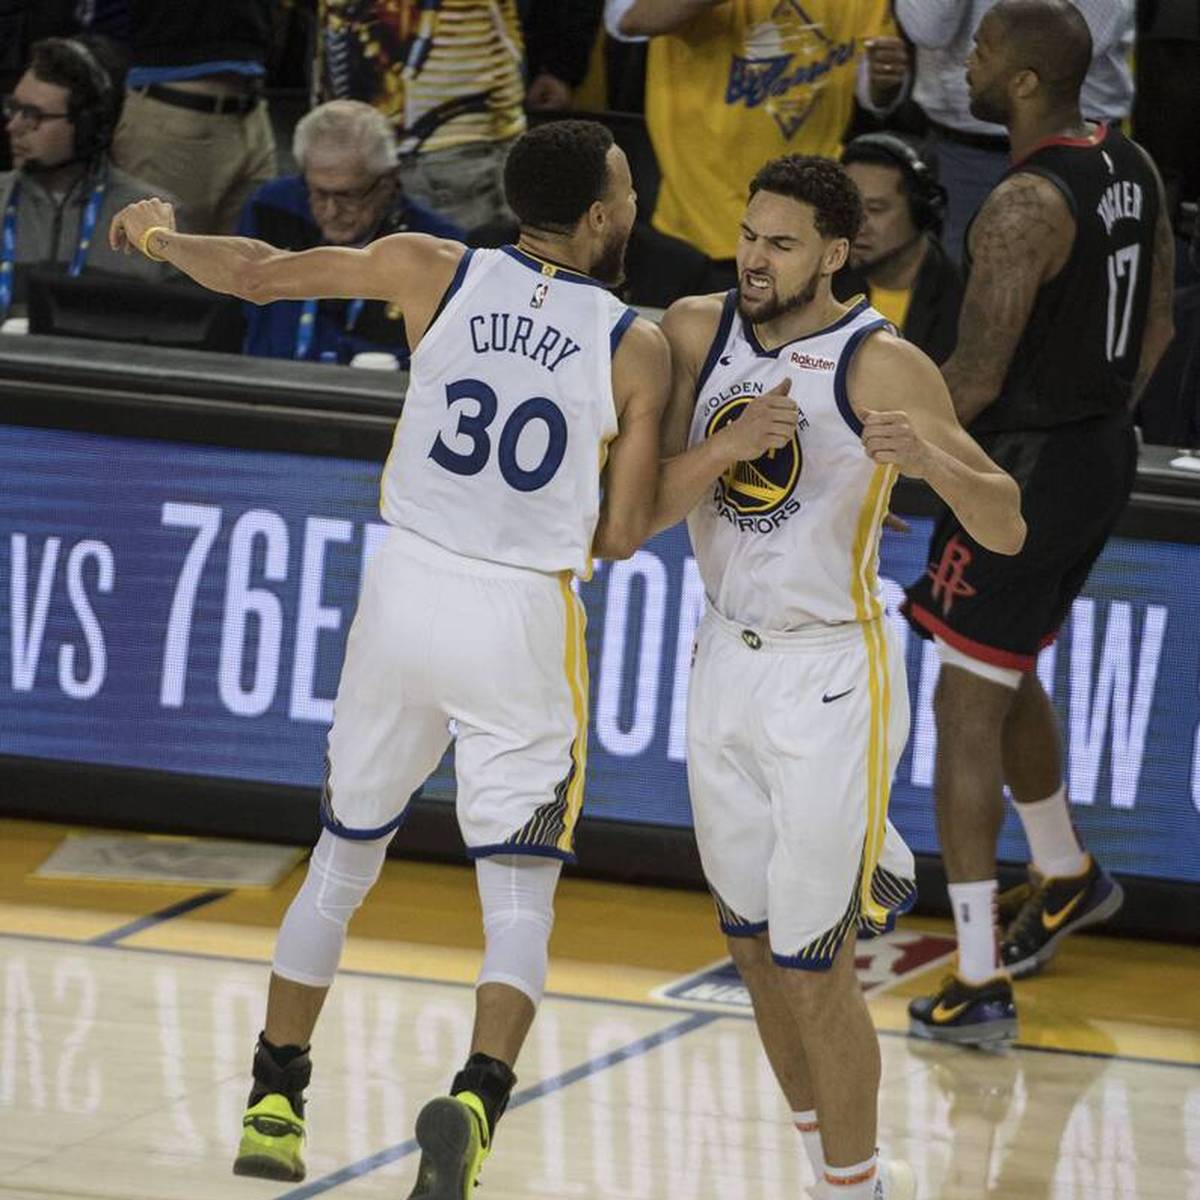 Dank Klay Thompson und Steph Curry beenden die Warriors ihre Negativserie. Thompson gelingt sein bestes Spiel seit seinem Comeback.